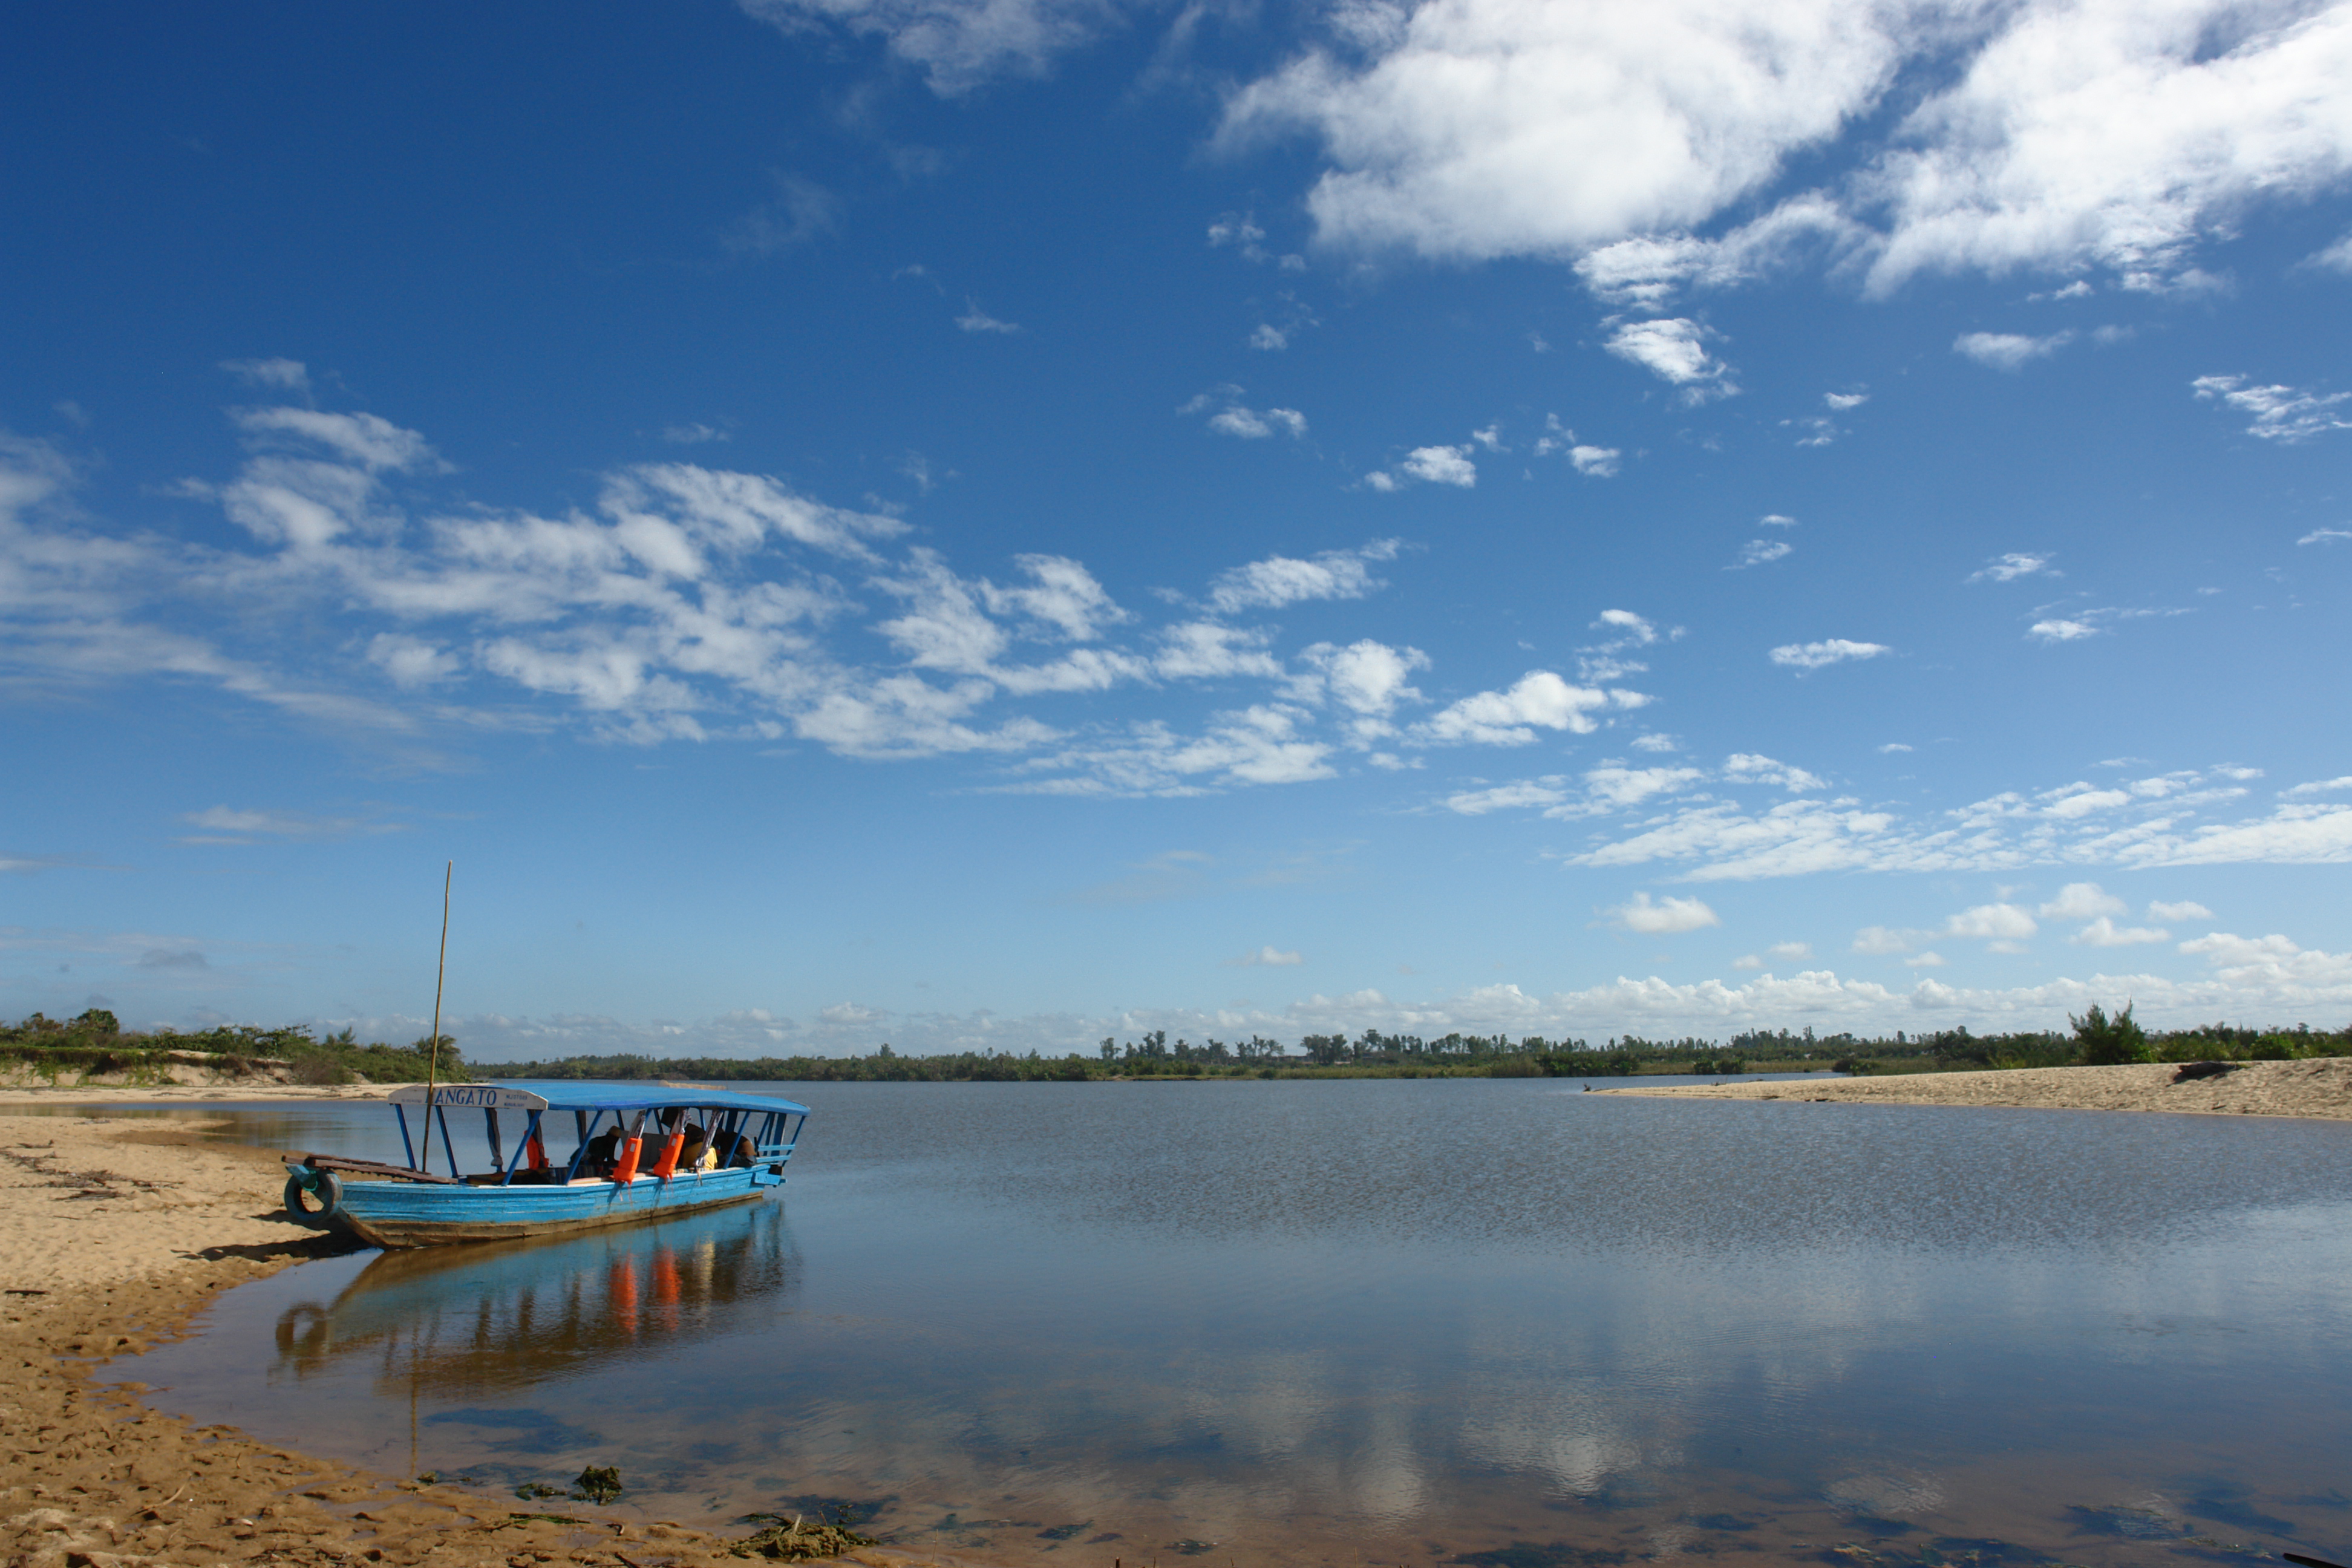 “Peaceful morning by the Zambezi River”, Mozambique